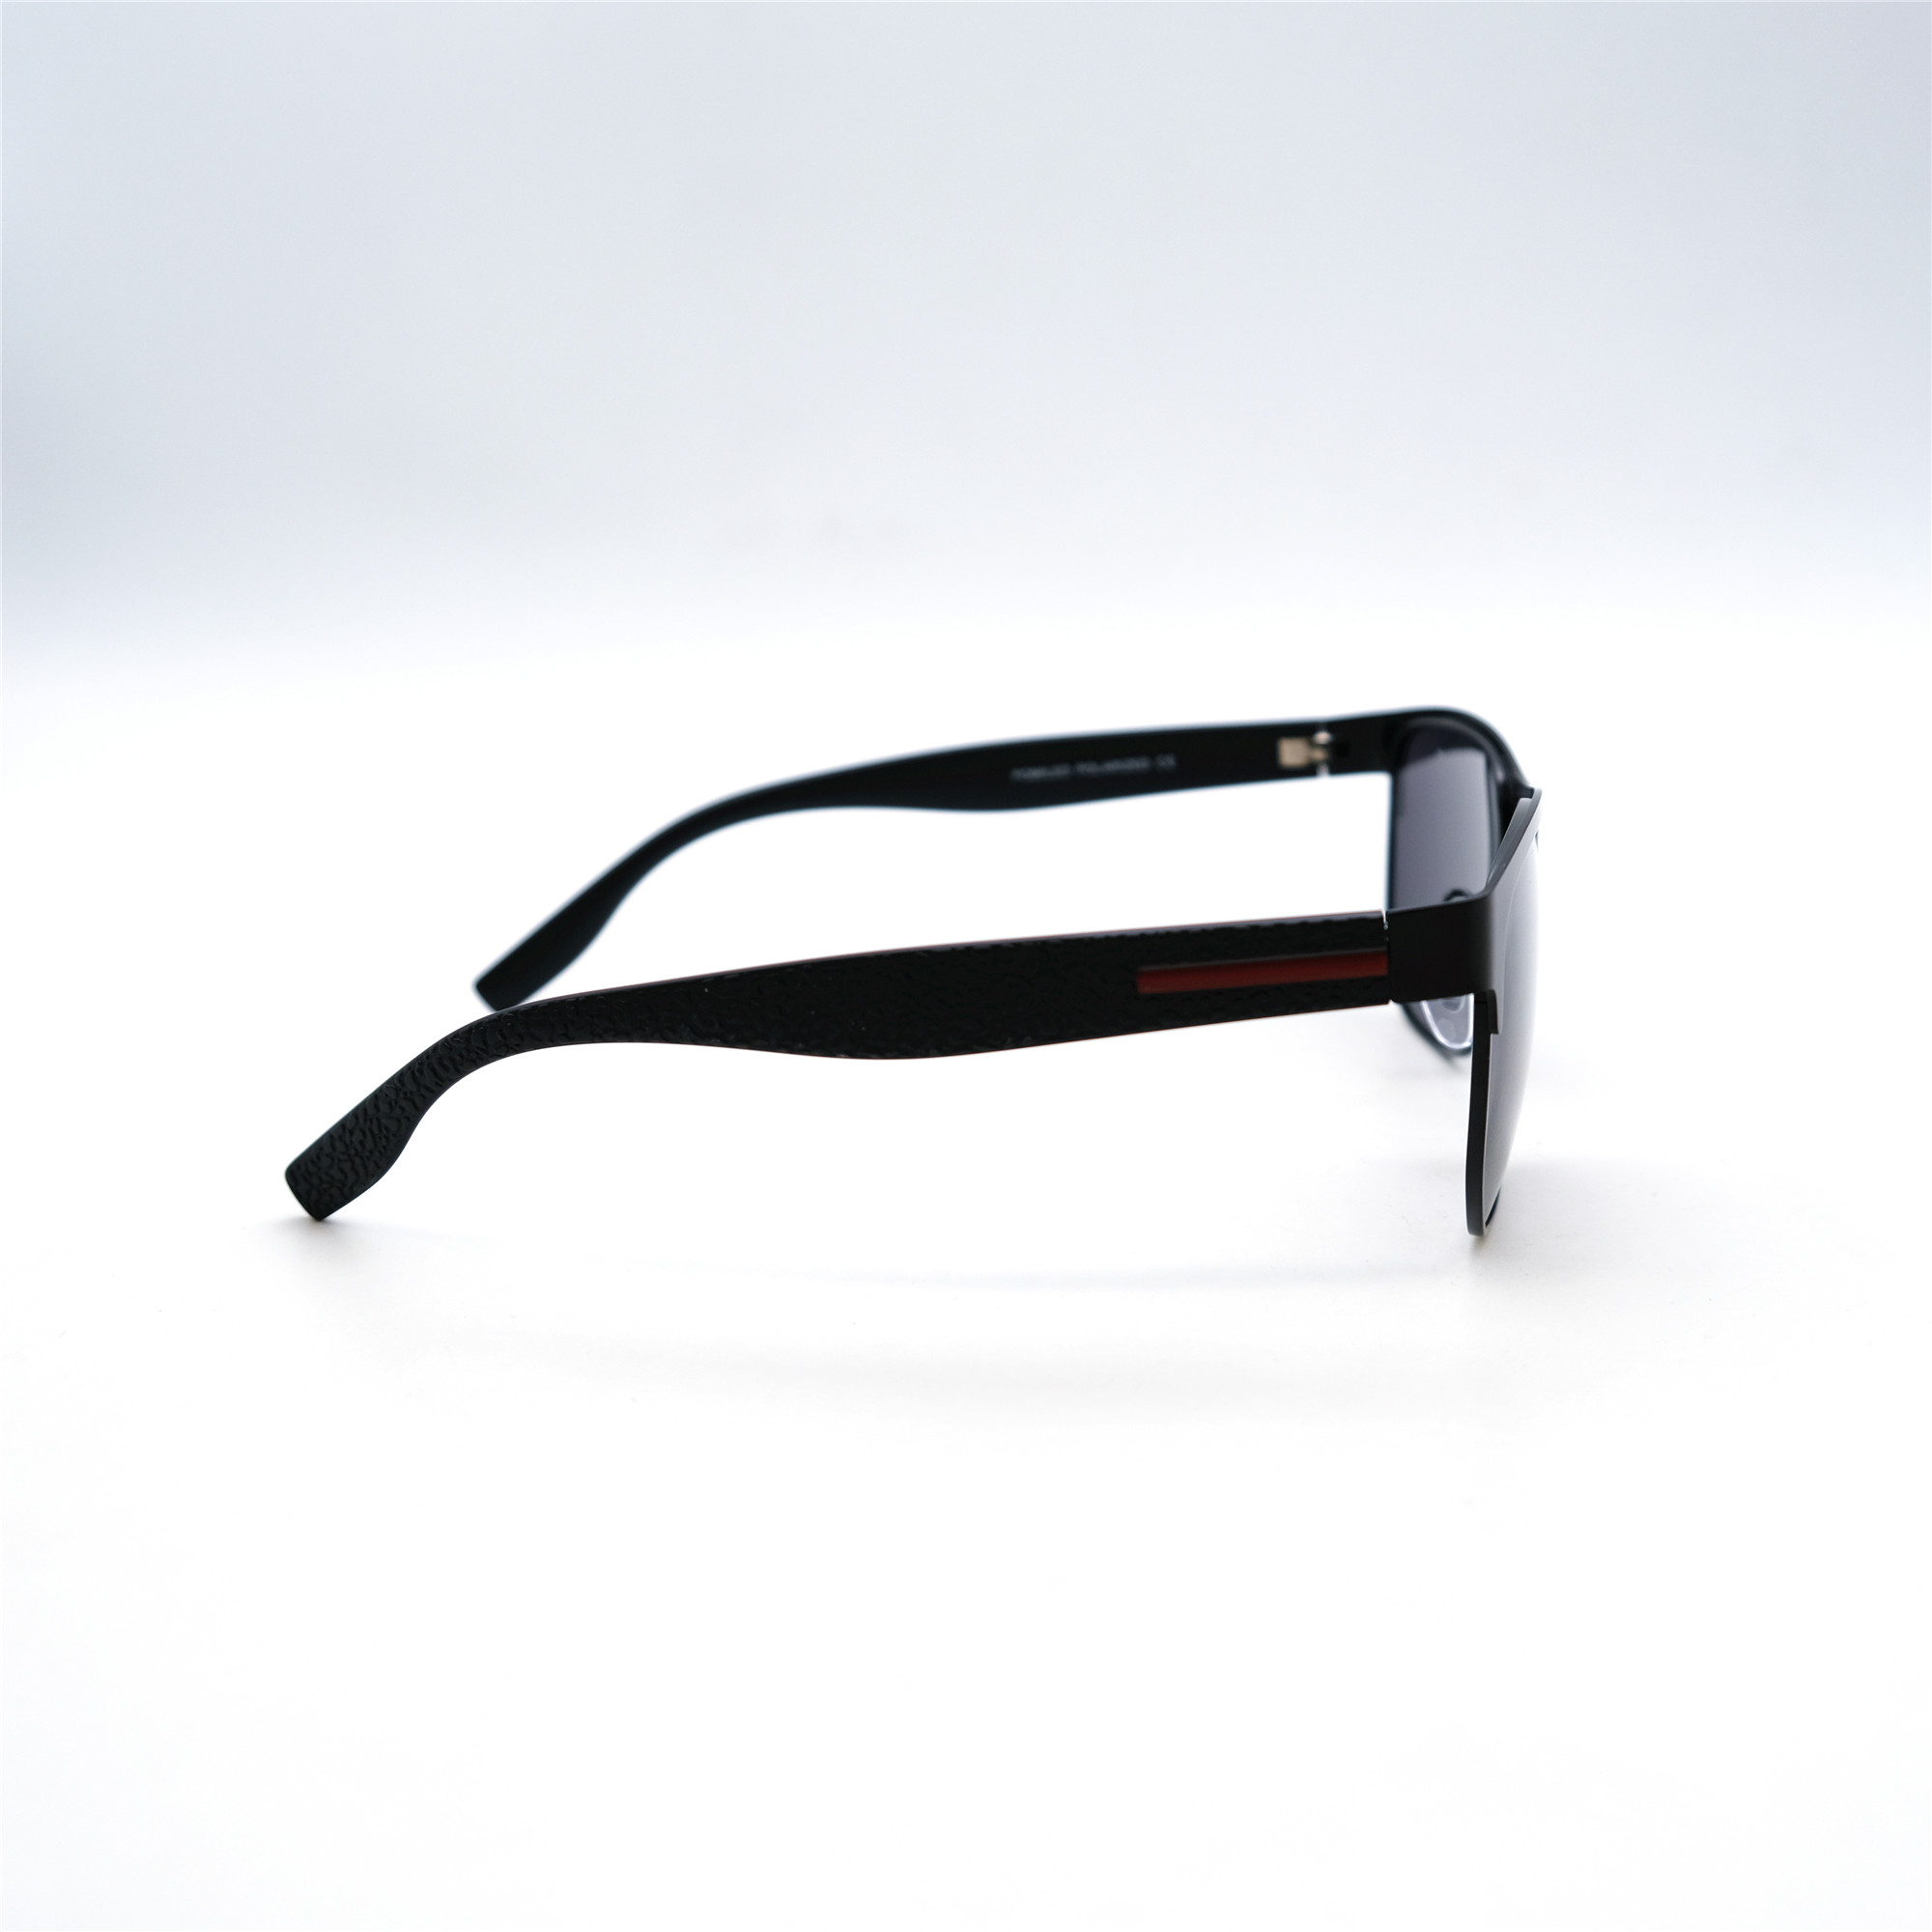  Солнцезащитные очки картинка Мужские Pomiled Polarized Квадратные 08220-C4-08 